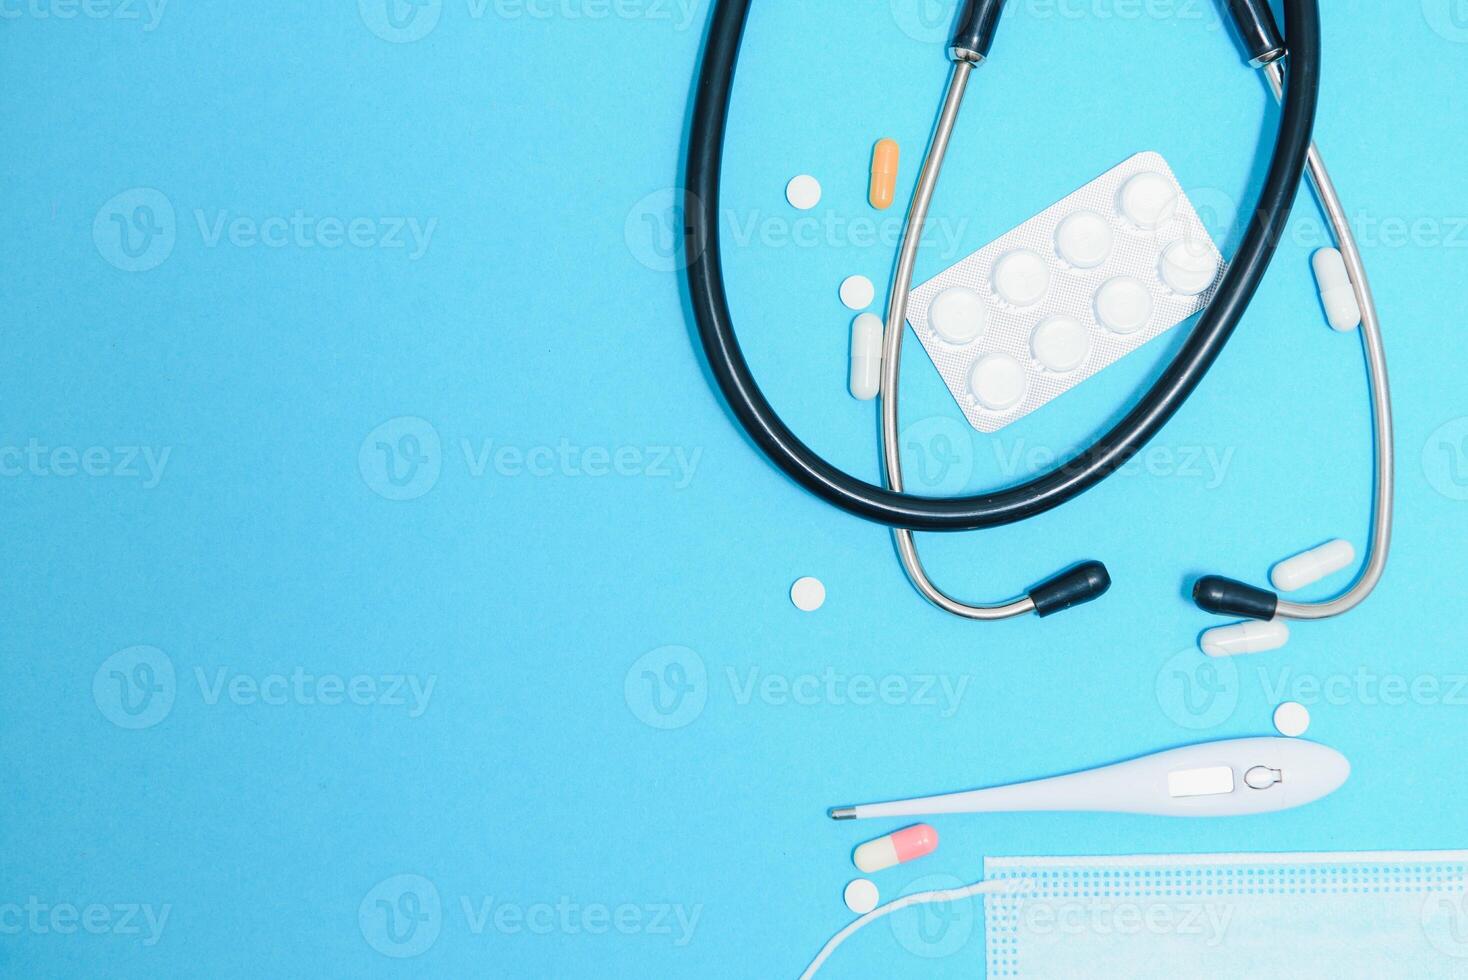 dispersado blanco pastillas en azul mesa.medica, farmacia y cuidado de la salud concepto. azul antecedentes blanco pastillas con un médico estatoscopio, parte superior ver foto